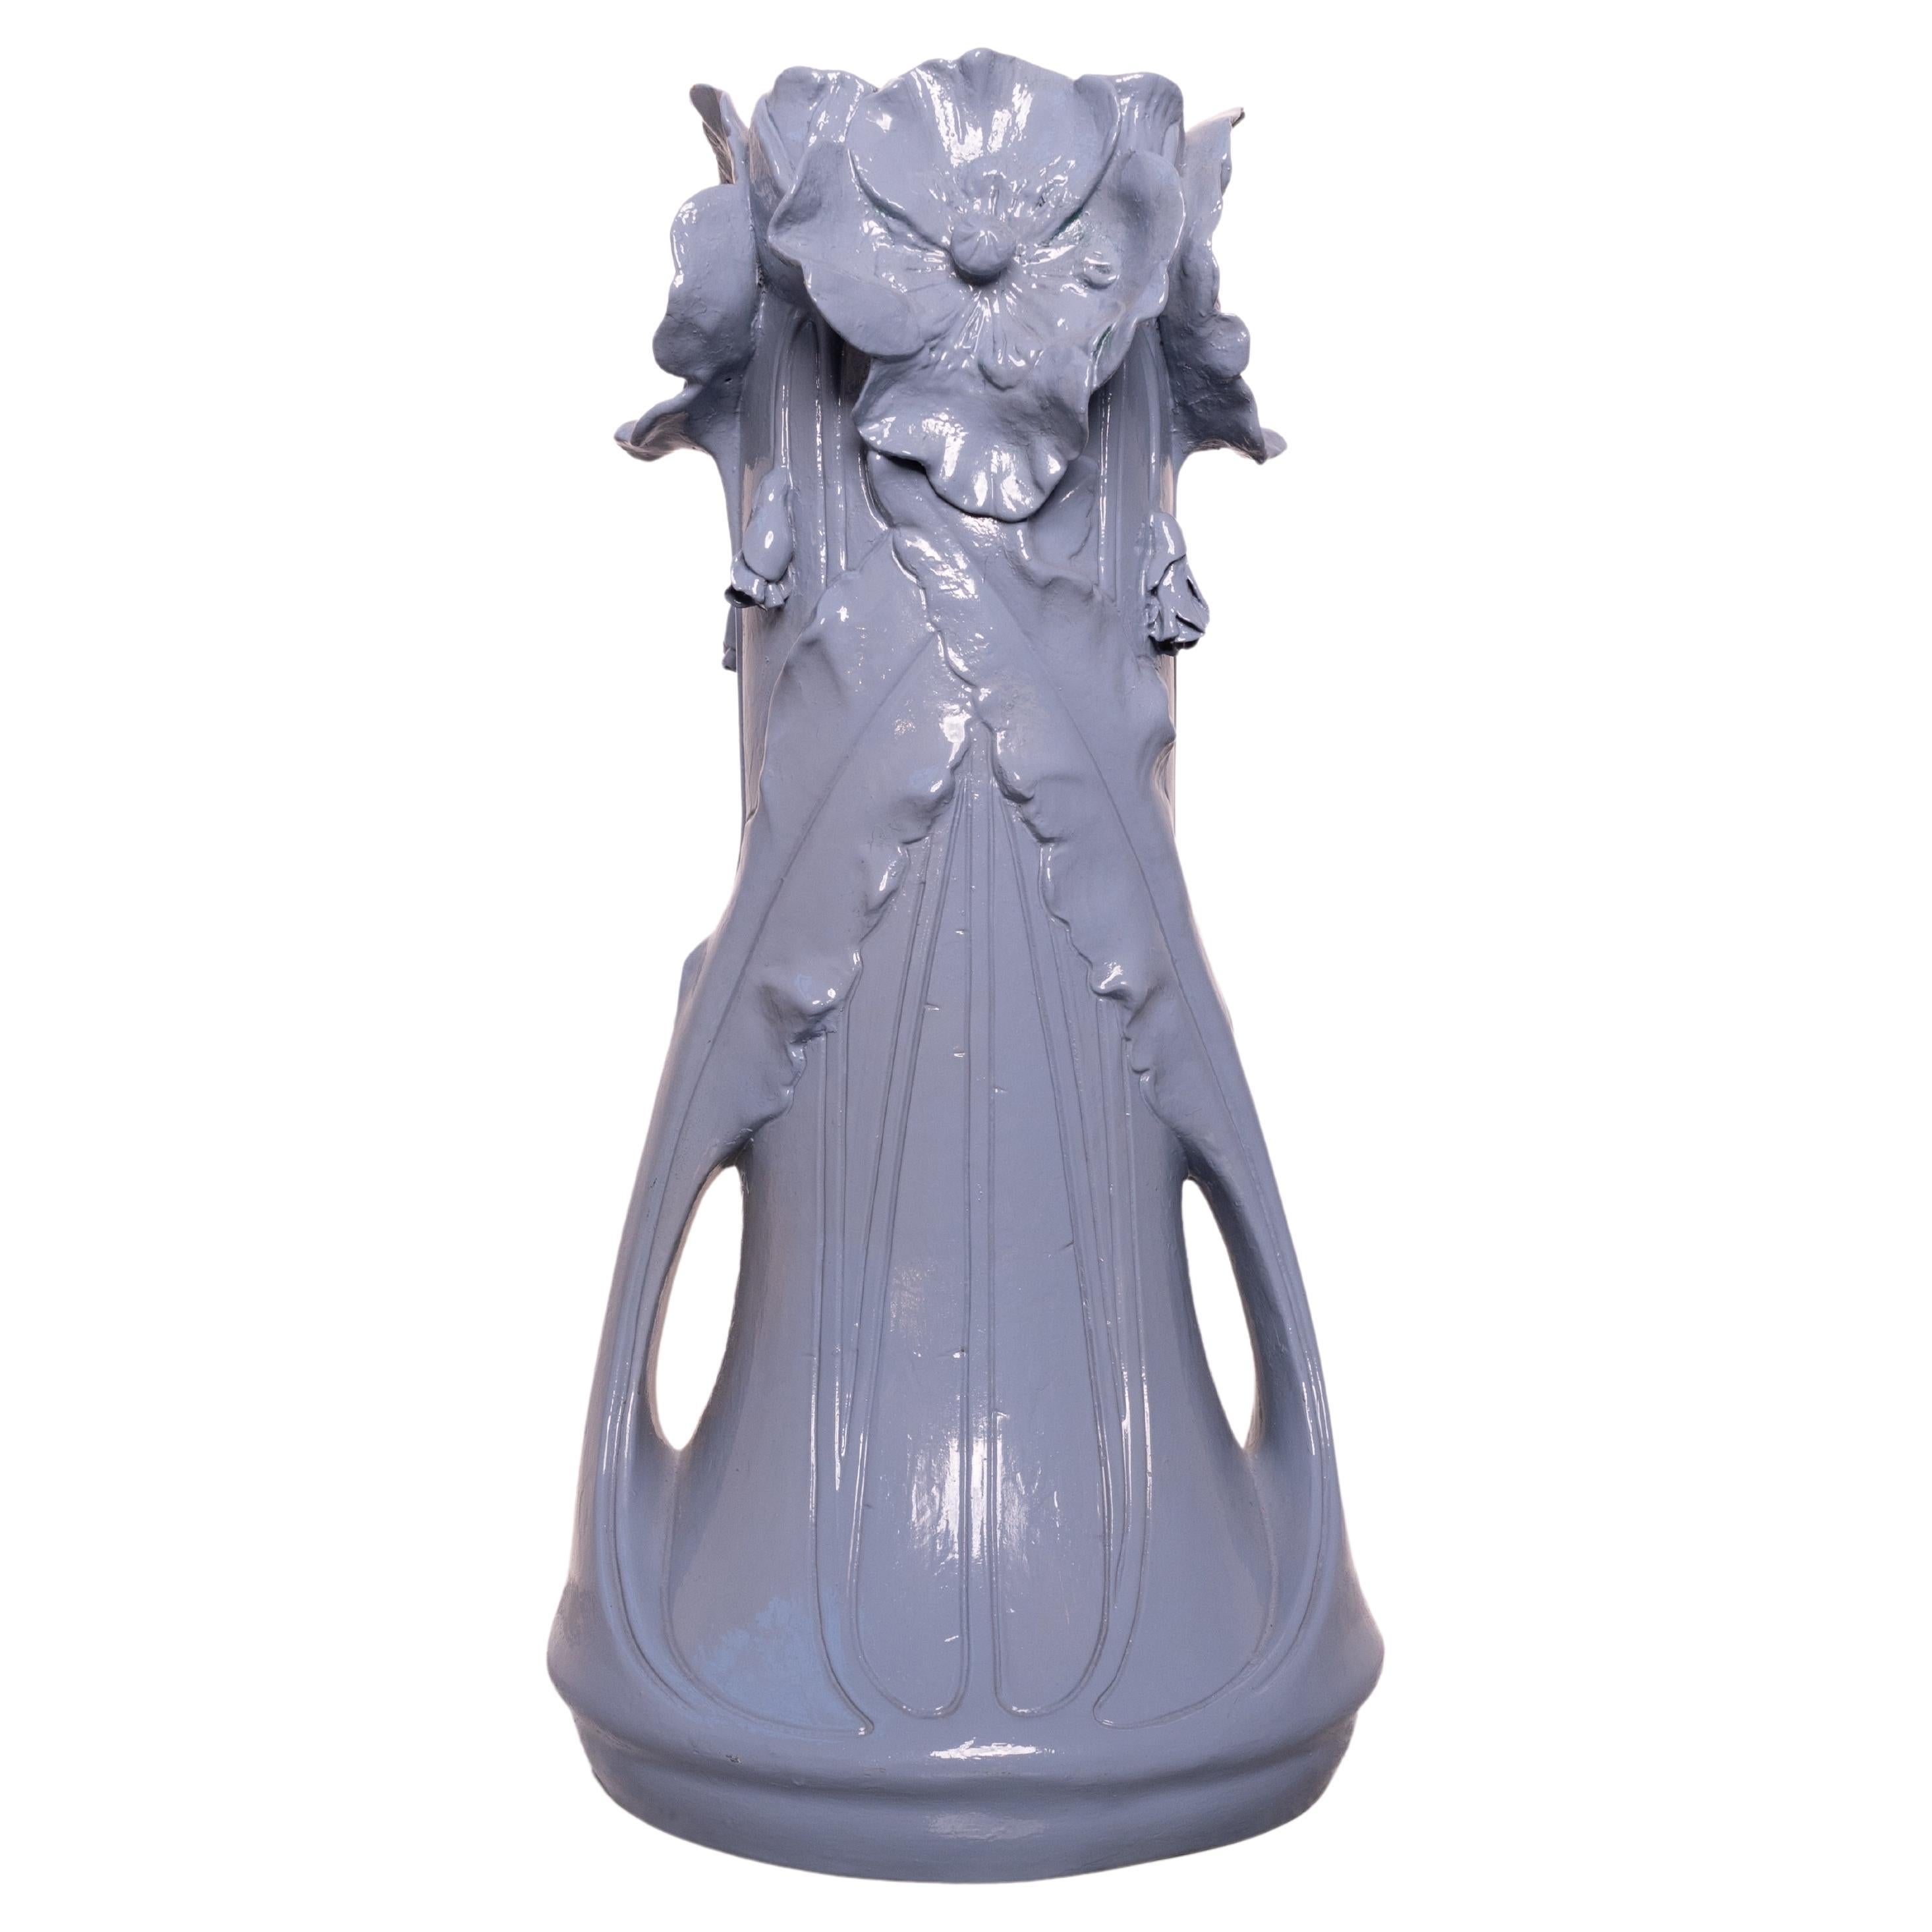 X-Large Jugendstil ceramic vase by Julius Dressler (late 19th – early 20th cent)